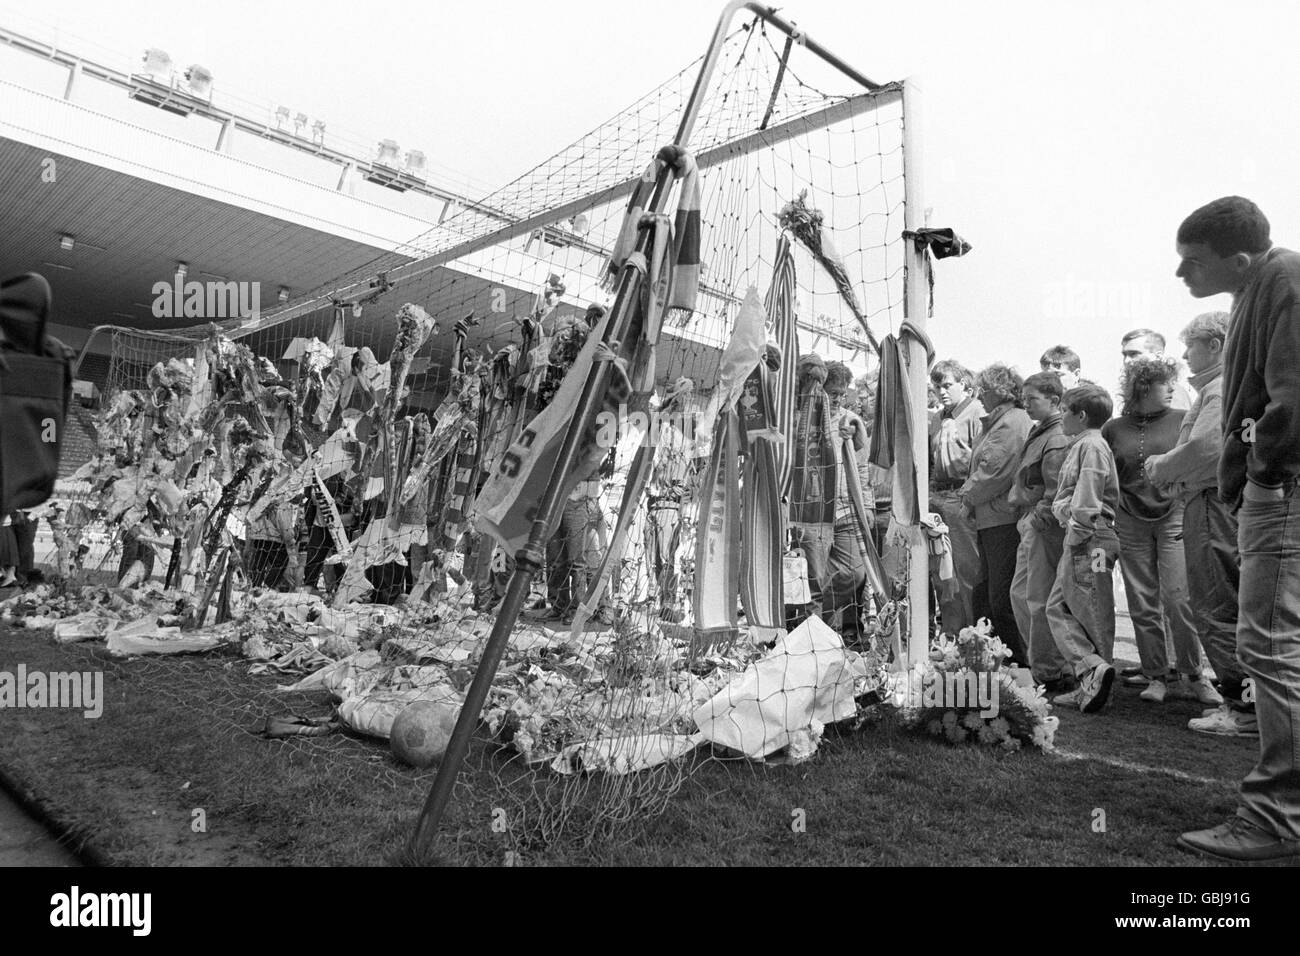 El gol en el Kop End of Anfield, adornada con tributos florales y de bufanda por los fans de Liverpool después de que el estadio se abriera a cientos reunidos en las puertas de Shankly. Foto de stock